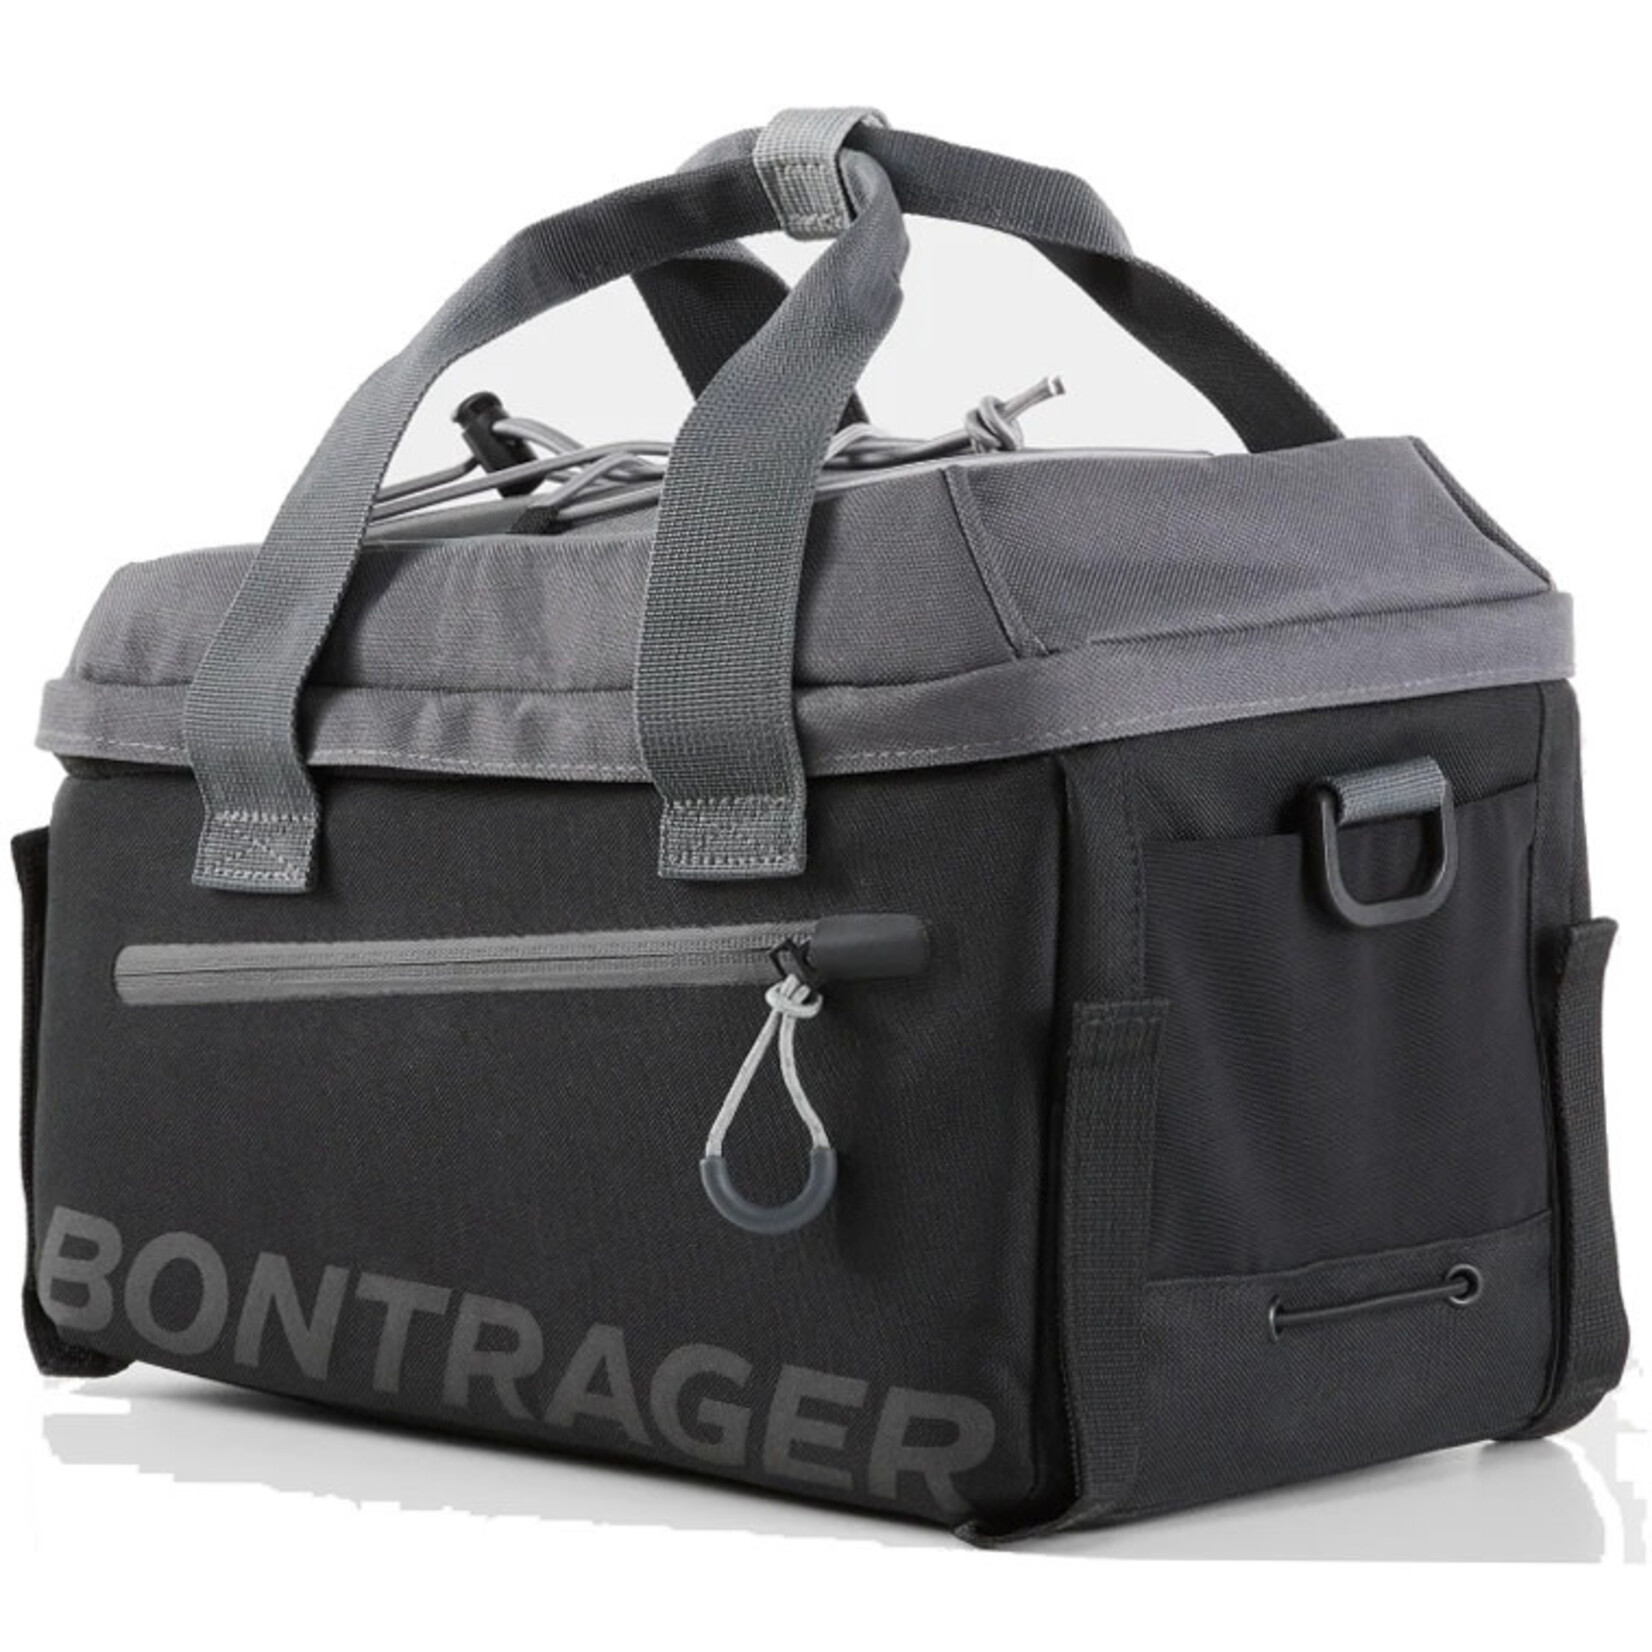 BONTRAGER Bontrager Commuter Trunk Bag 7L